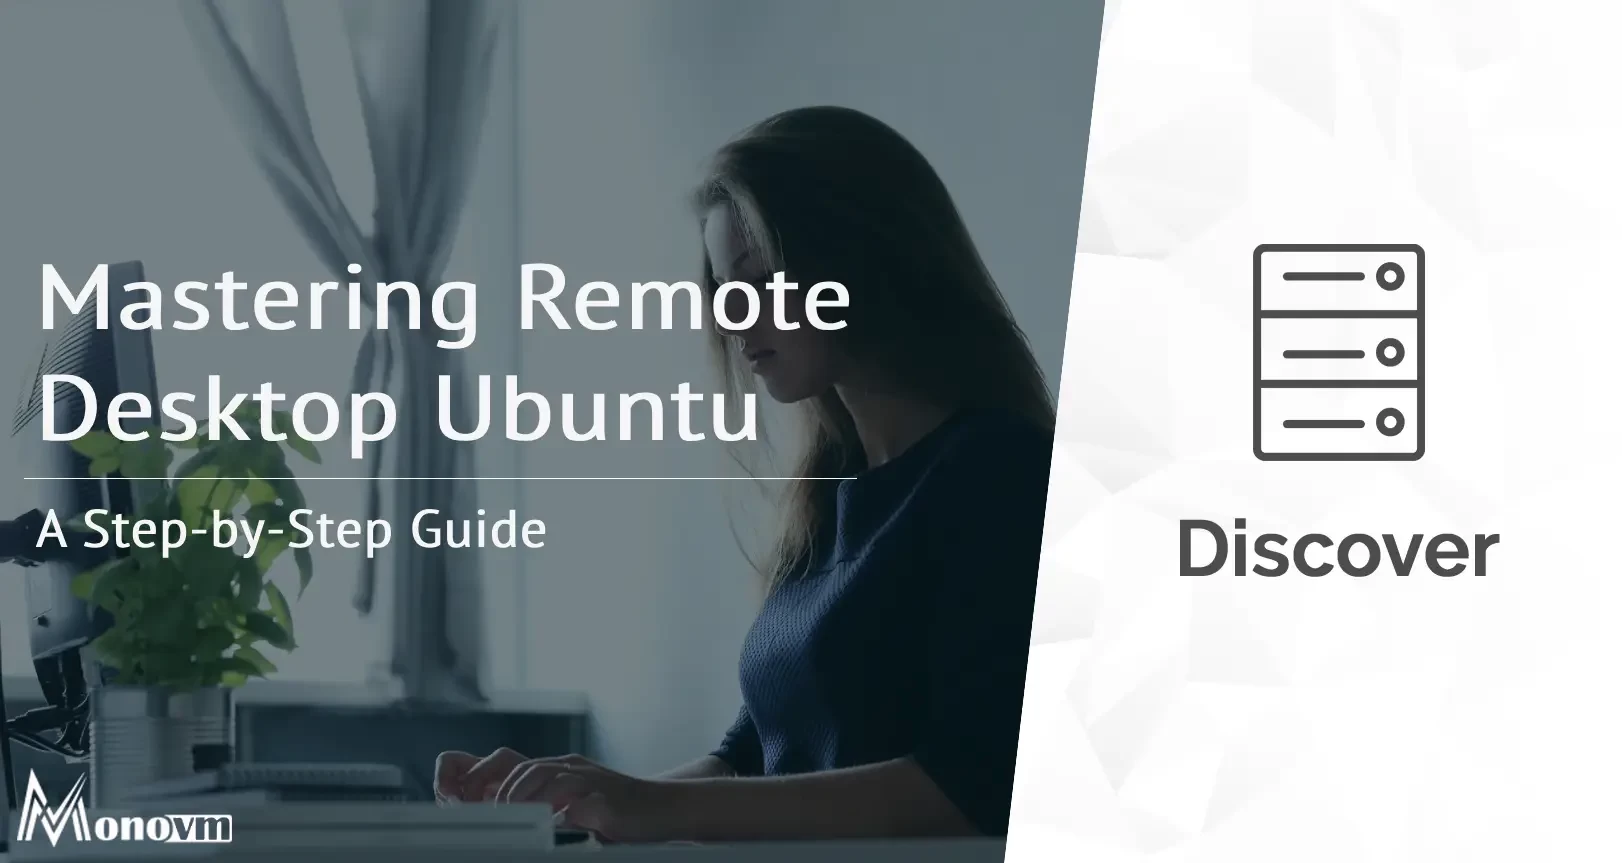 Mastering Remote Desktop Ubuntu: A Step-by-Step Guide